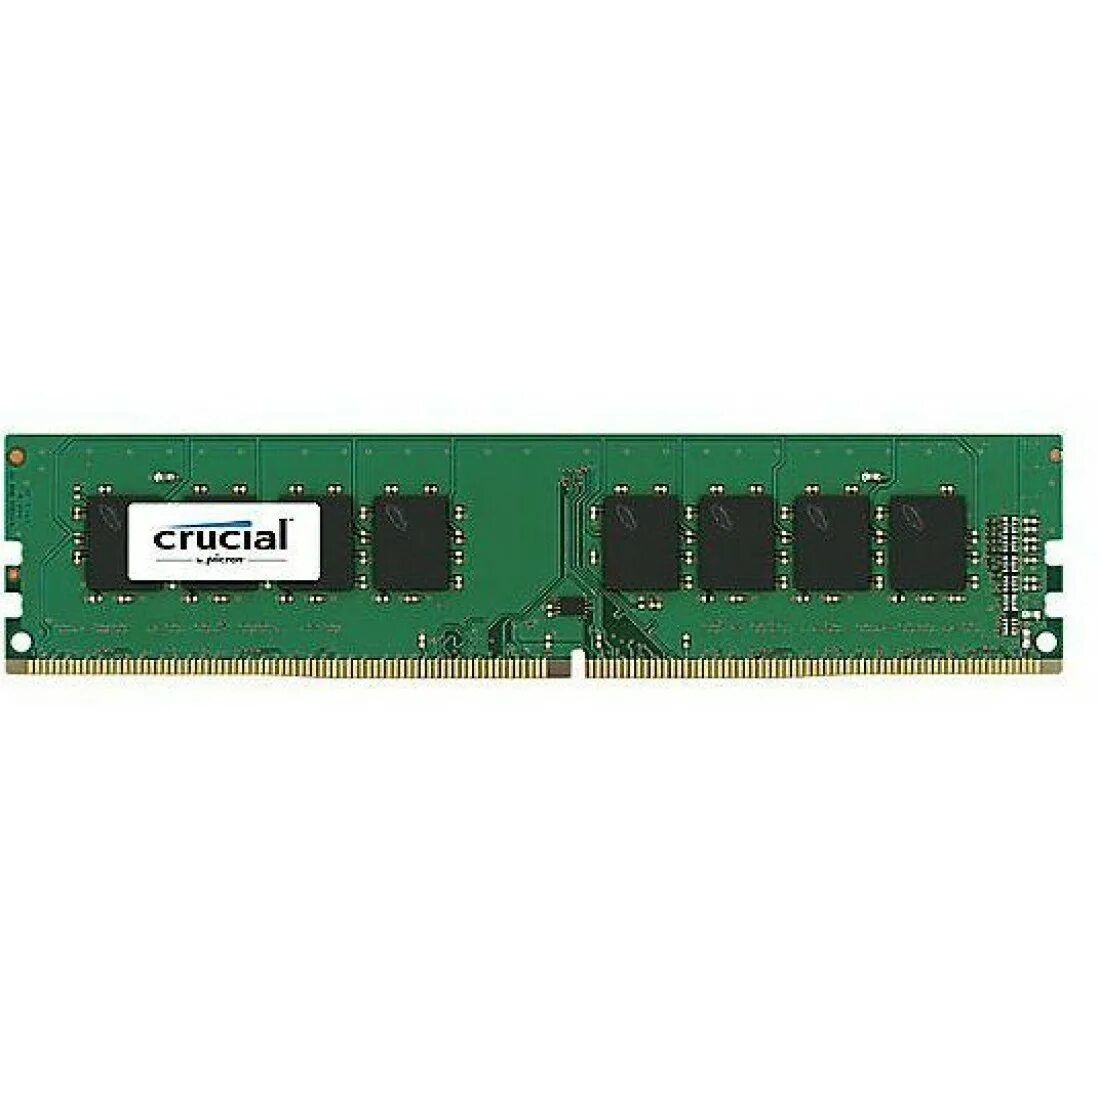 Купить память crucial. Crucial ddr4 DIMM 8 GB ct8g4dfra266 pc4-21300, 2666mhz. Crucial ddr4 16gb 2666mhz. Crucial 8gb ddr4 3200mhz. GOODRAM gr2666d464l19s/4g.